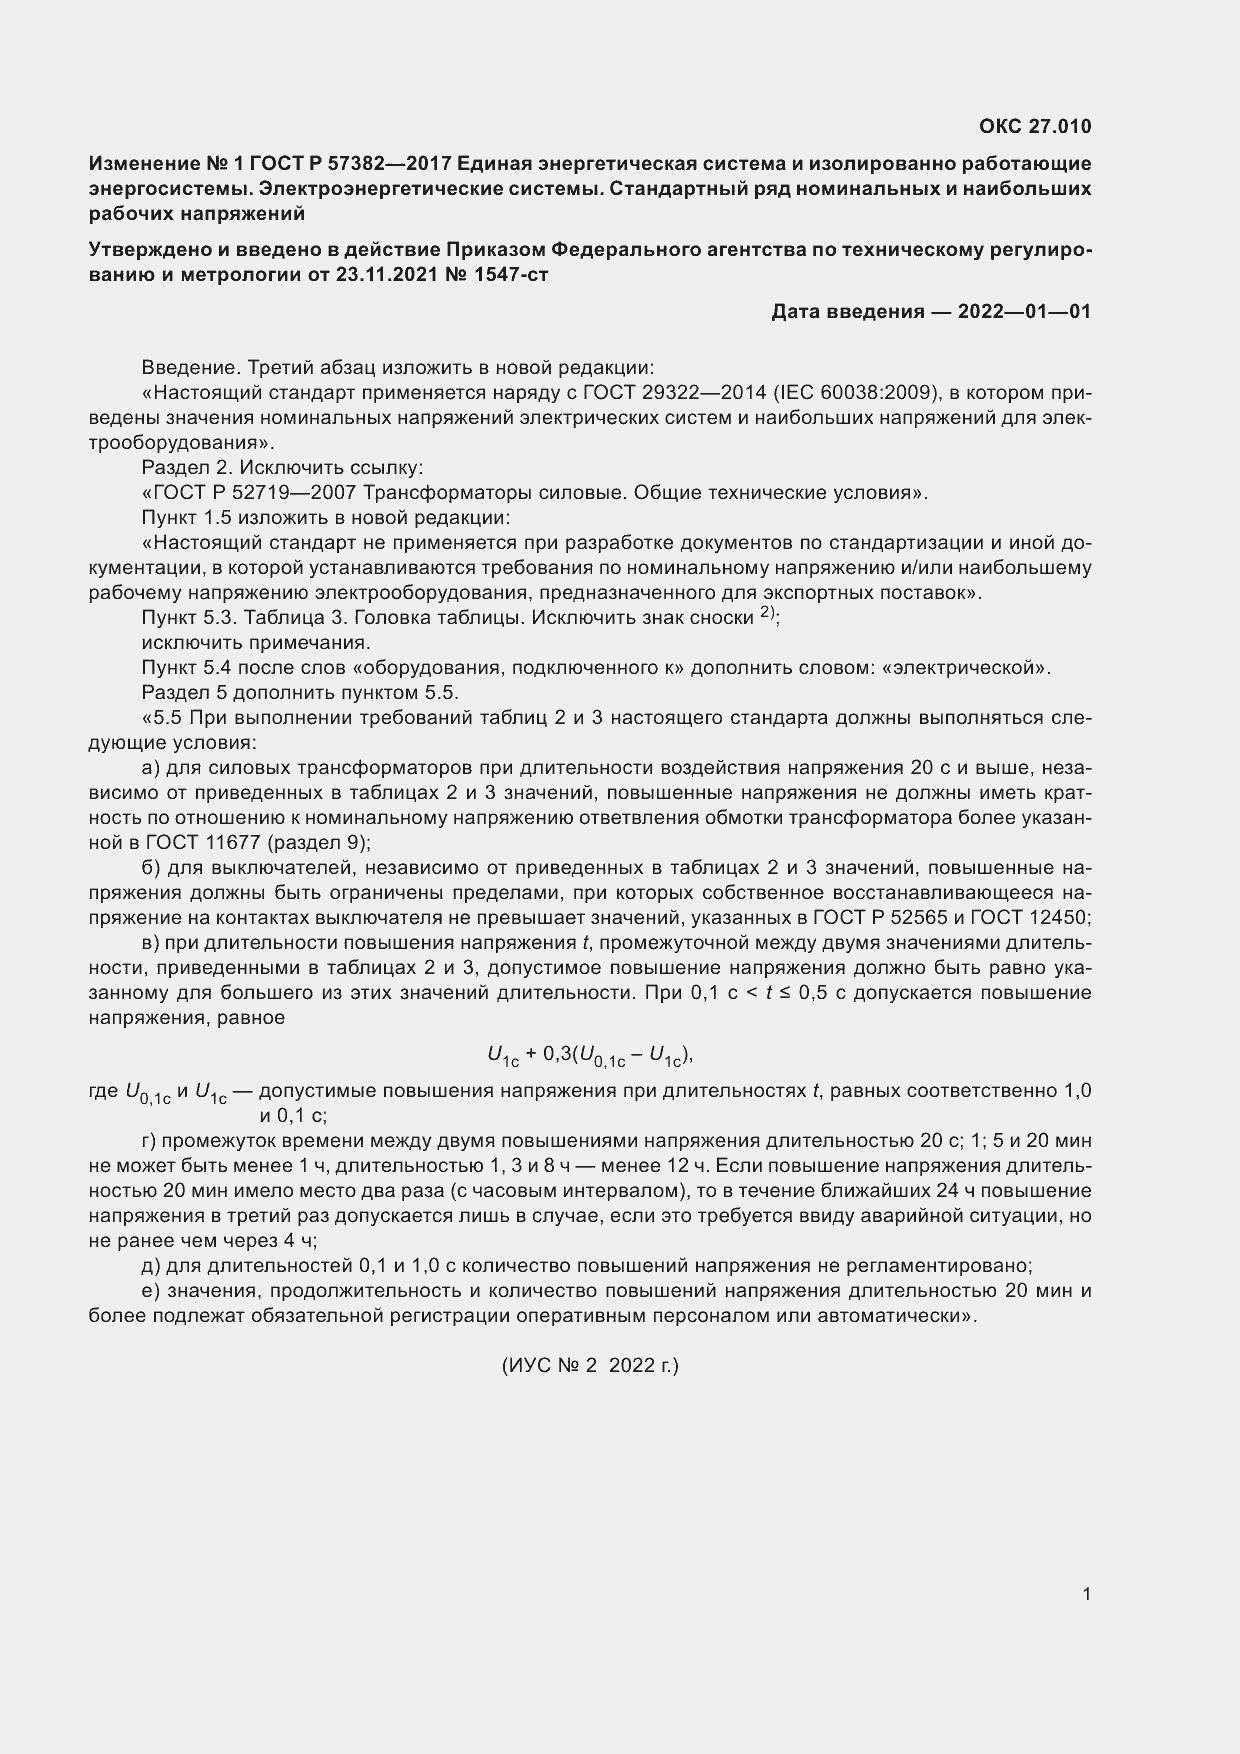 Изменение №1 к ГОСТ Р 57382-2017